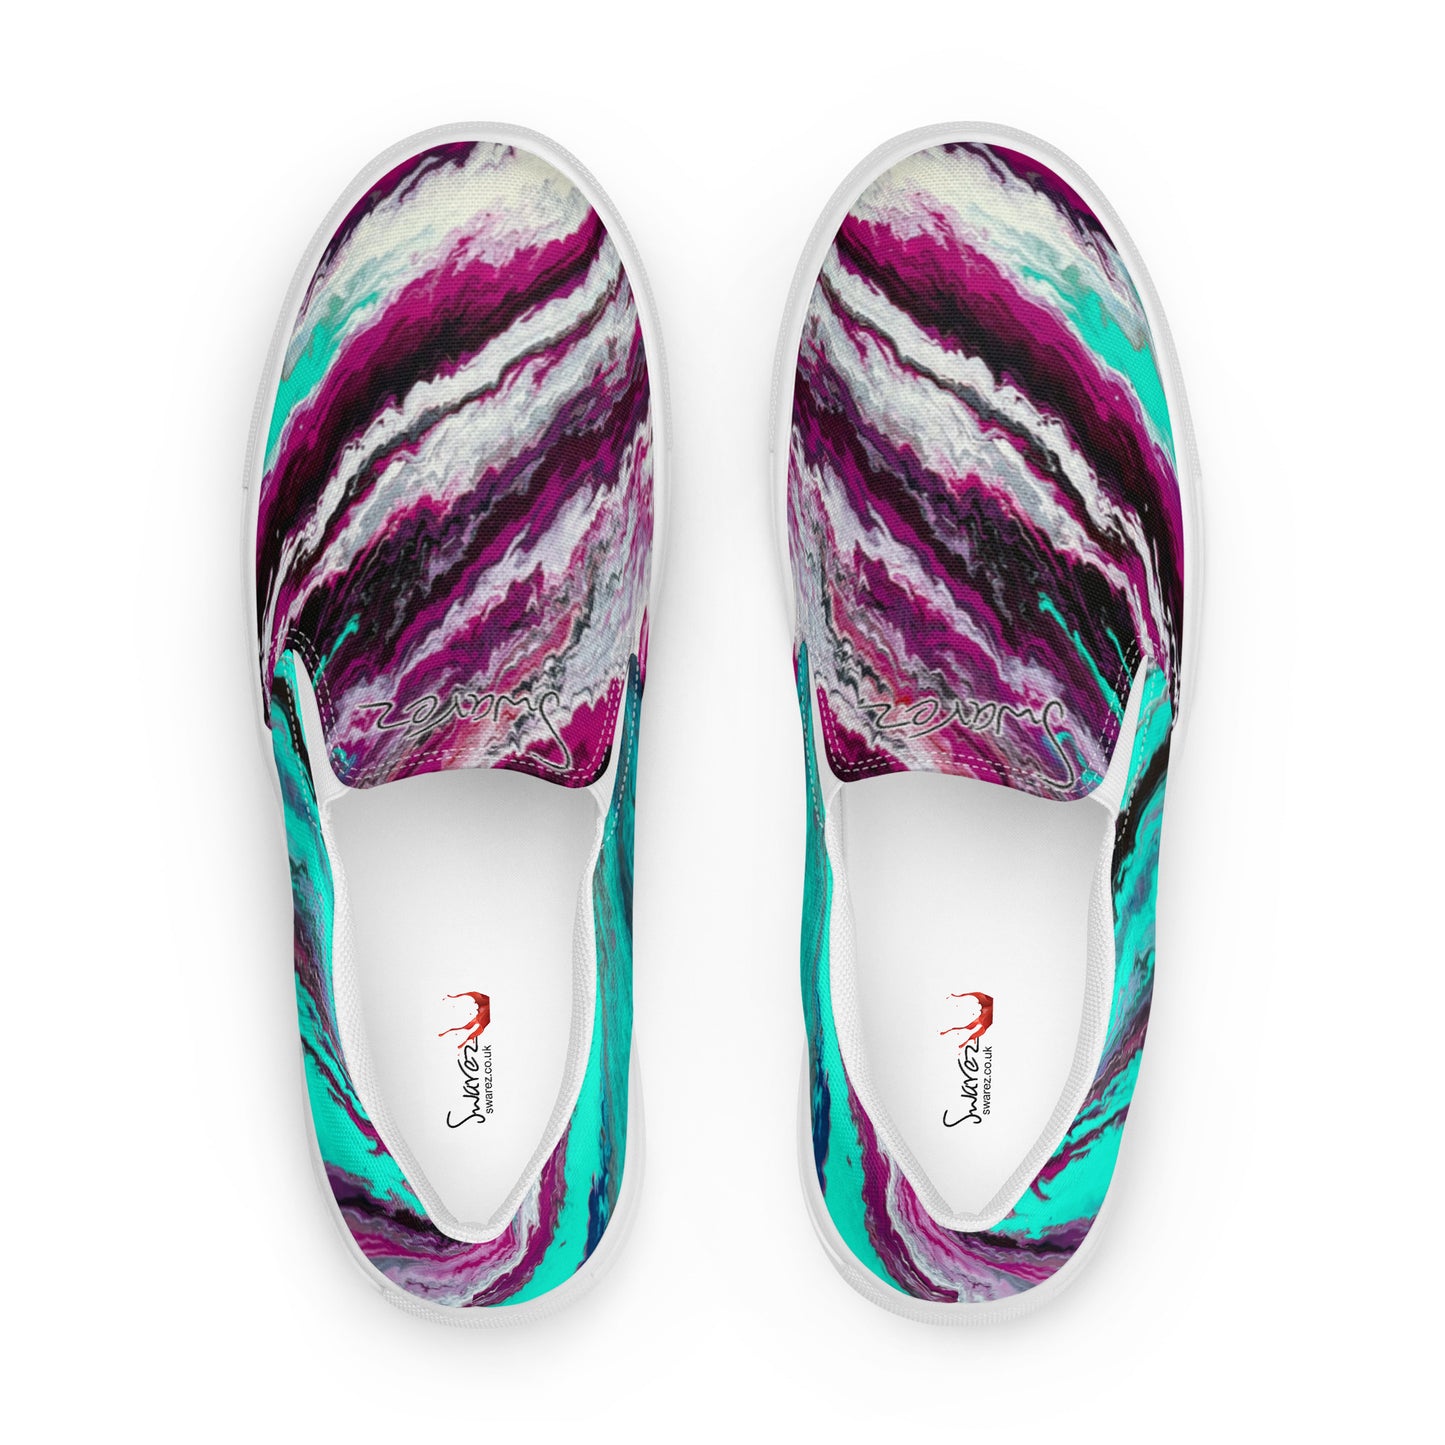 Slip-On-Leinenschuhe für Damen – Neon-Canyon-Design